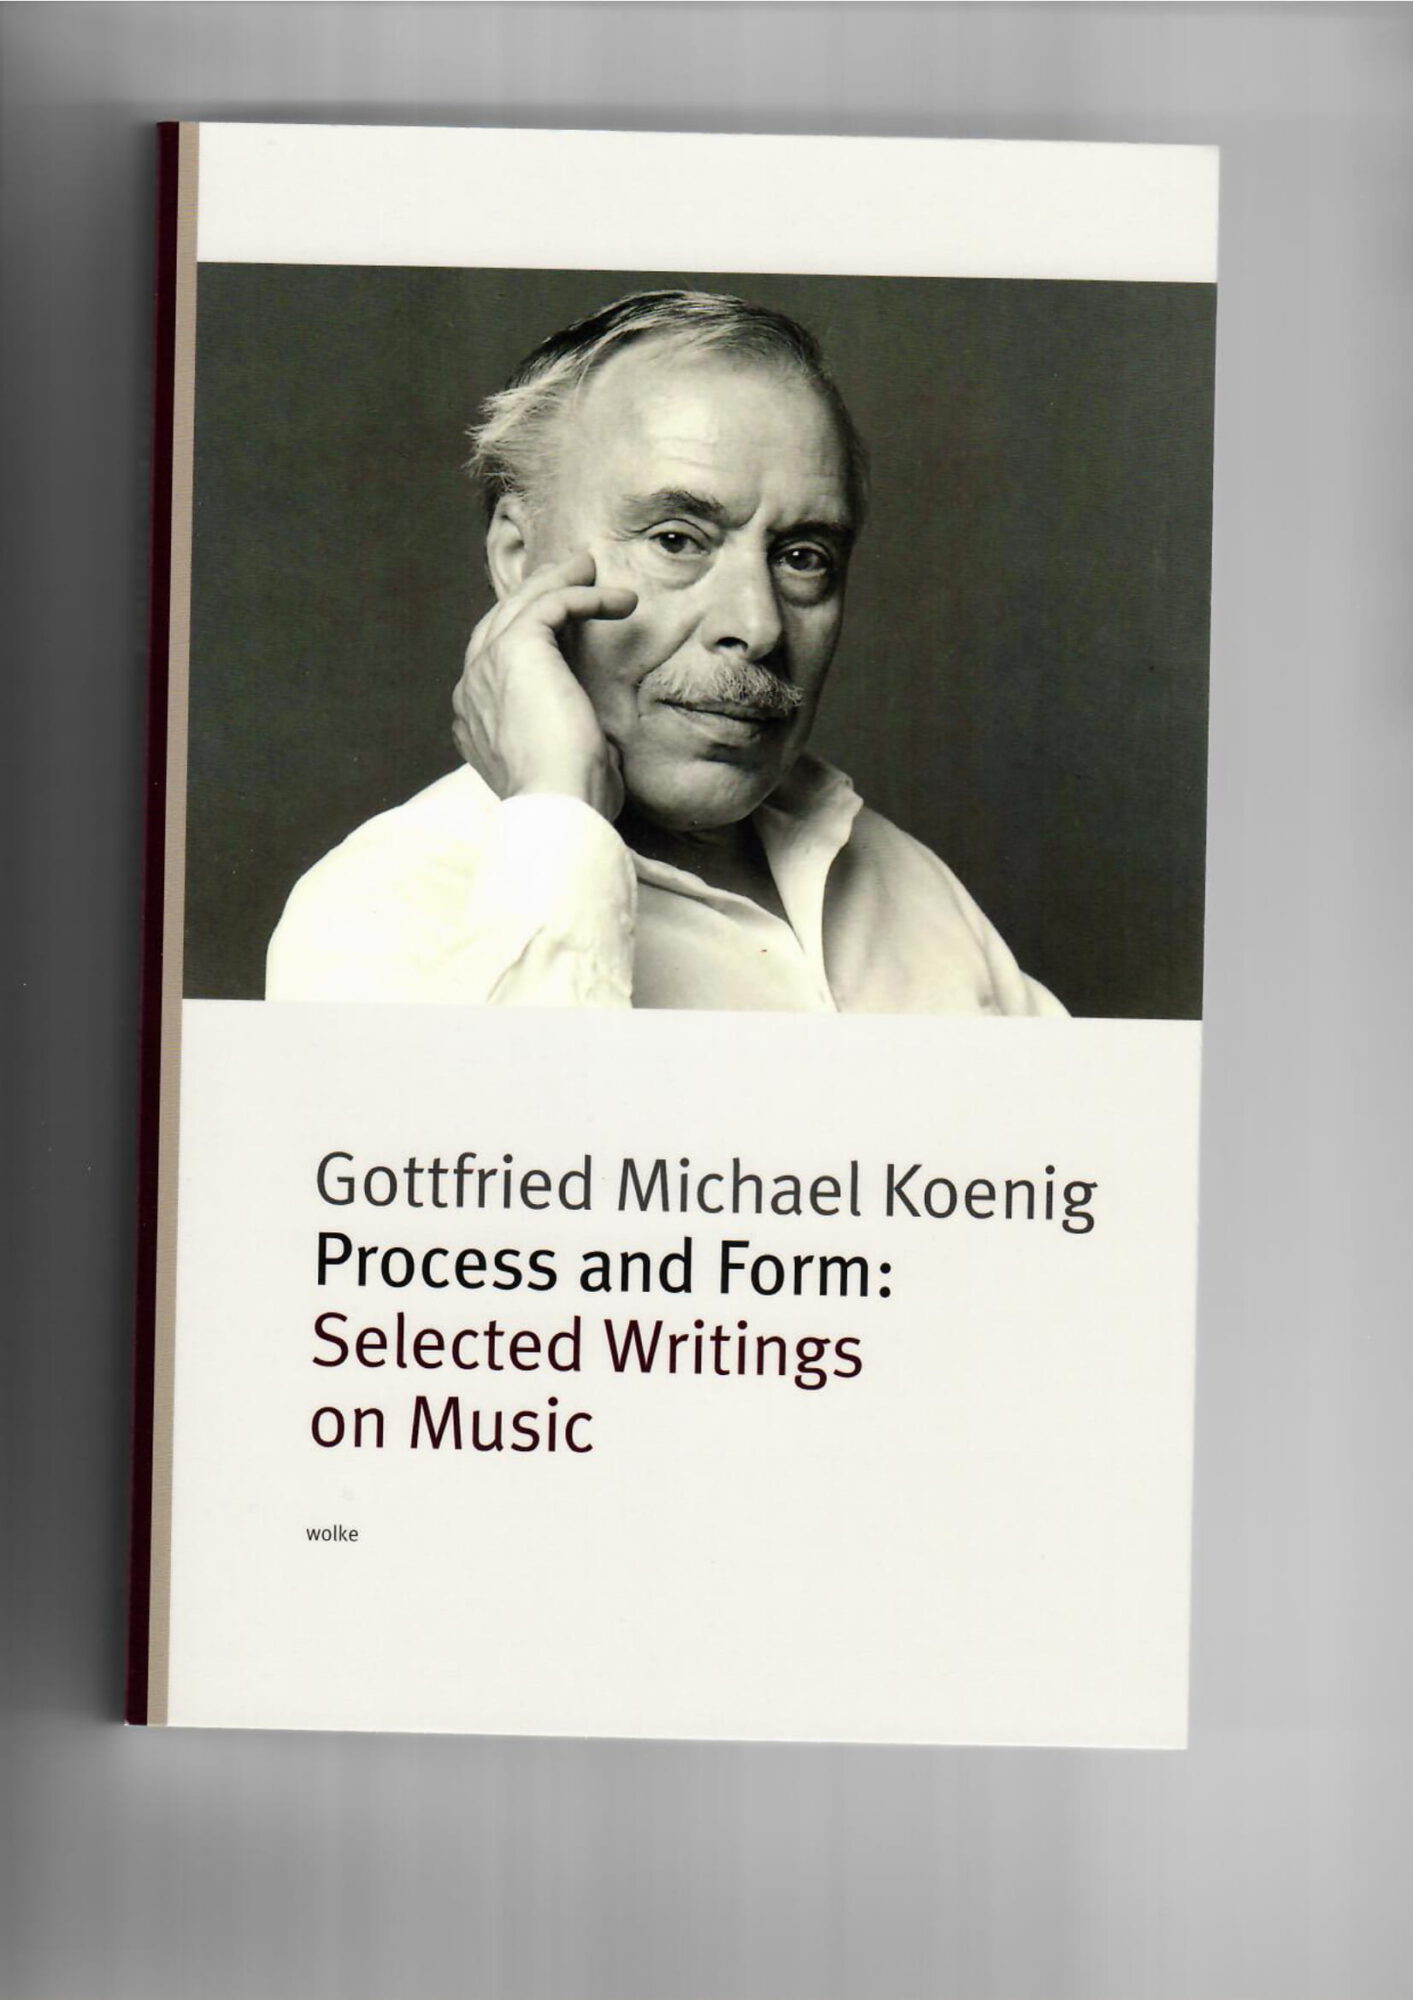 Gottfried Michael Koenig